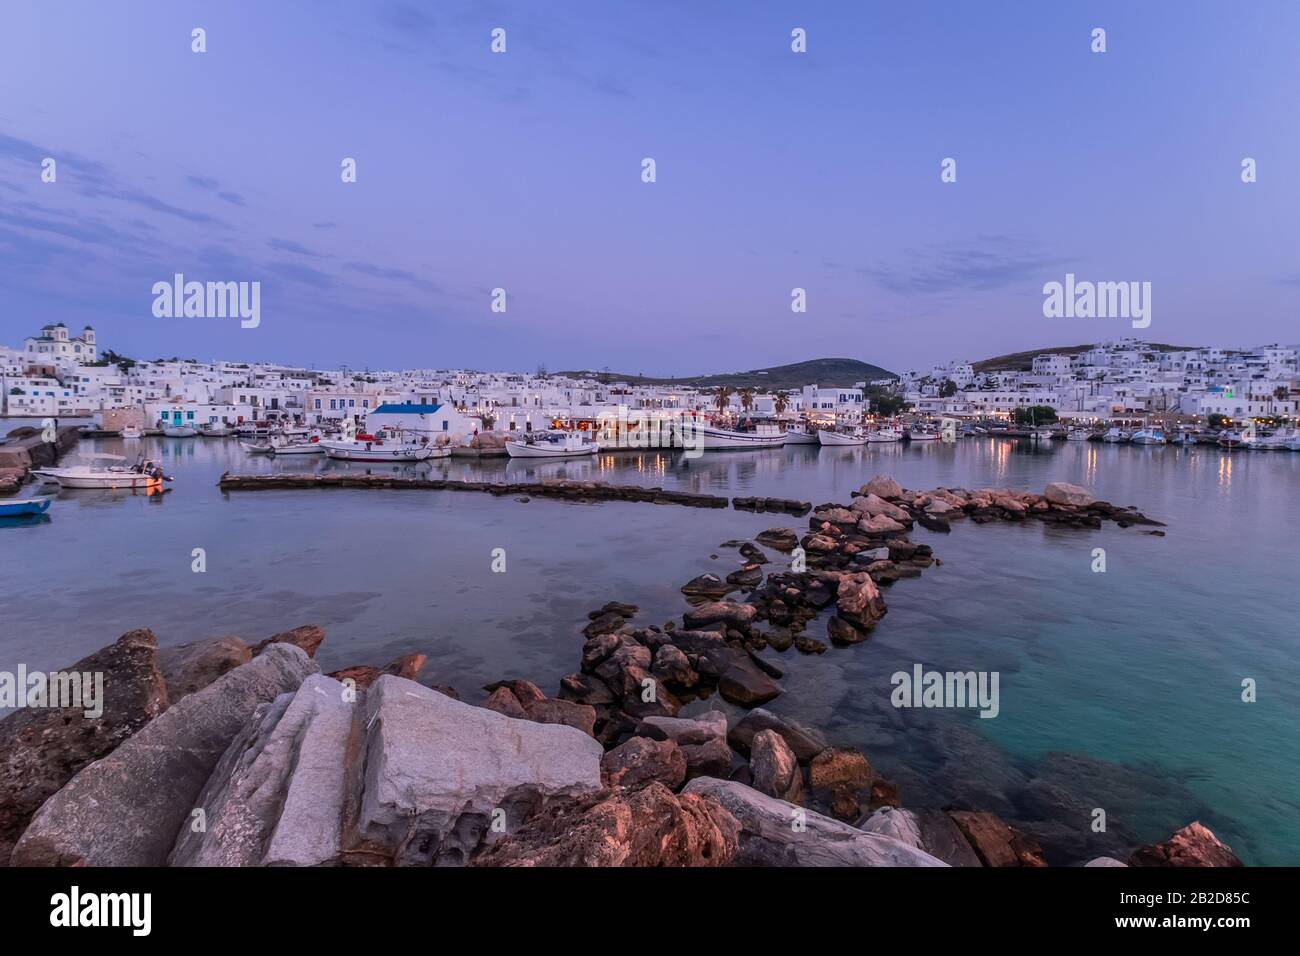 Panoramablick auf den Sonnenuntergang bei der beliebten Touristenattraktion auf der Insel Paros, Naousa. Promenadenzone mit Bars und Restaurants am Hafen. Ägeisches Meer Stockfoto